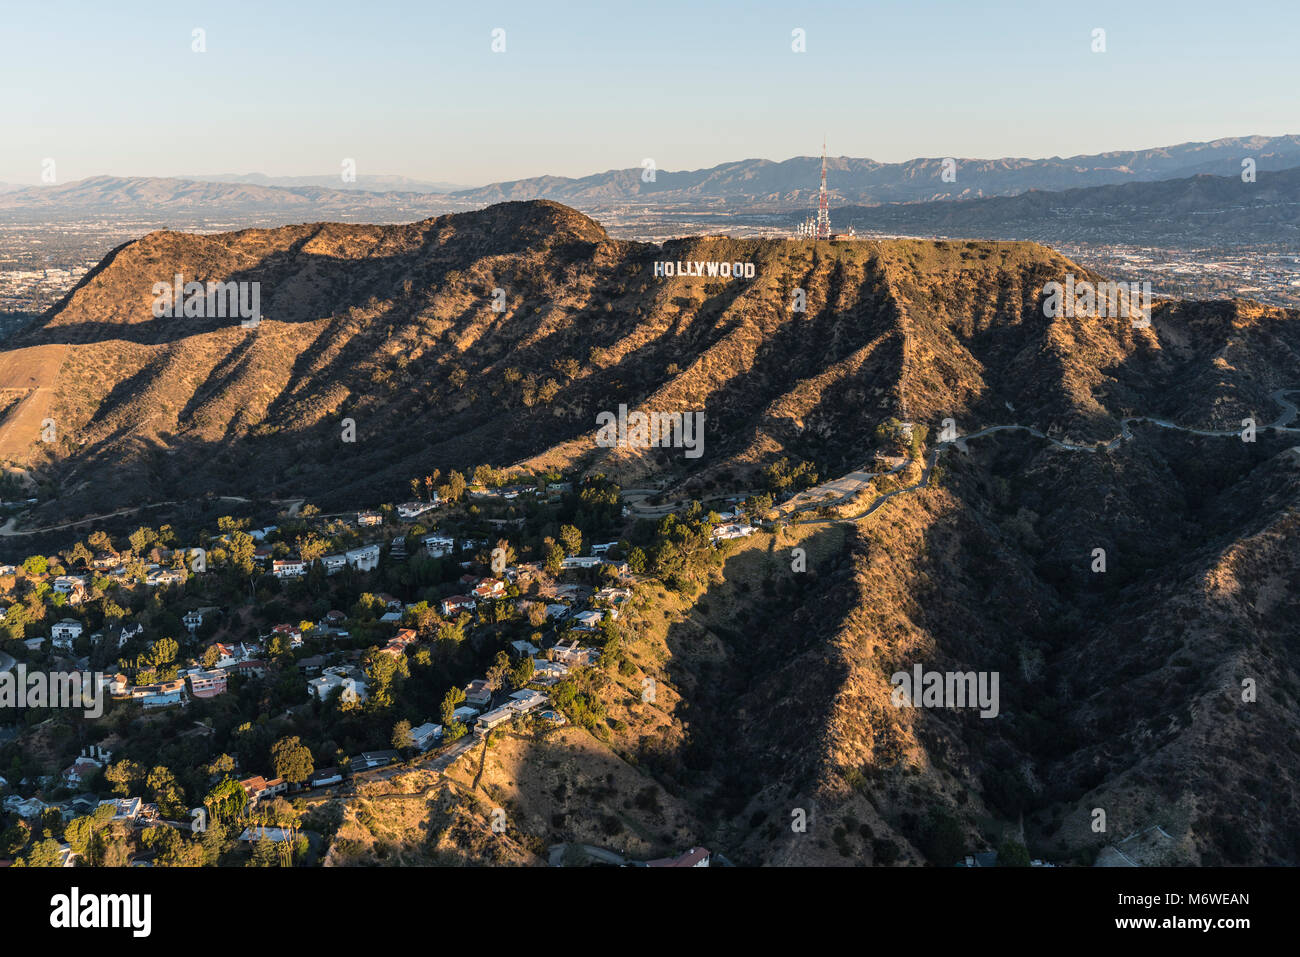 Los Angeles, California, Stati Uniti d'America - 20 Febbraio 2018: mattina vista aerea del celebre Hollywood Sign in Santa Monica le montagne con la San Fernand Foto Stock